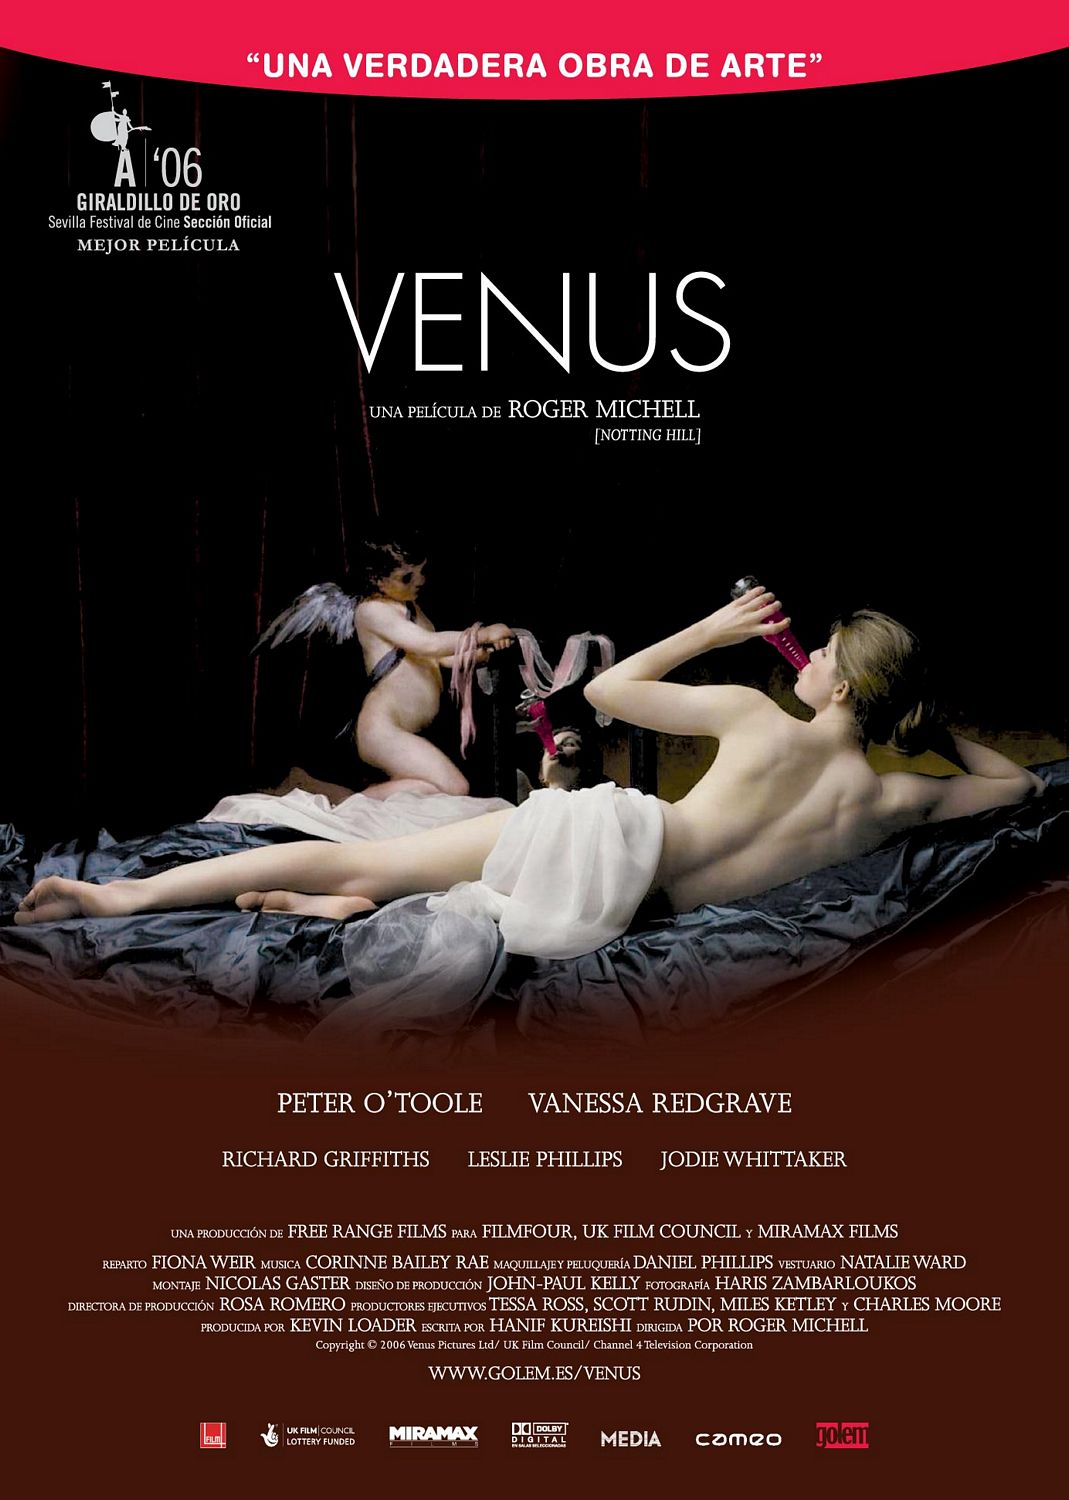 Постер - Венера: 1069x1500 / 174 Кб